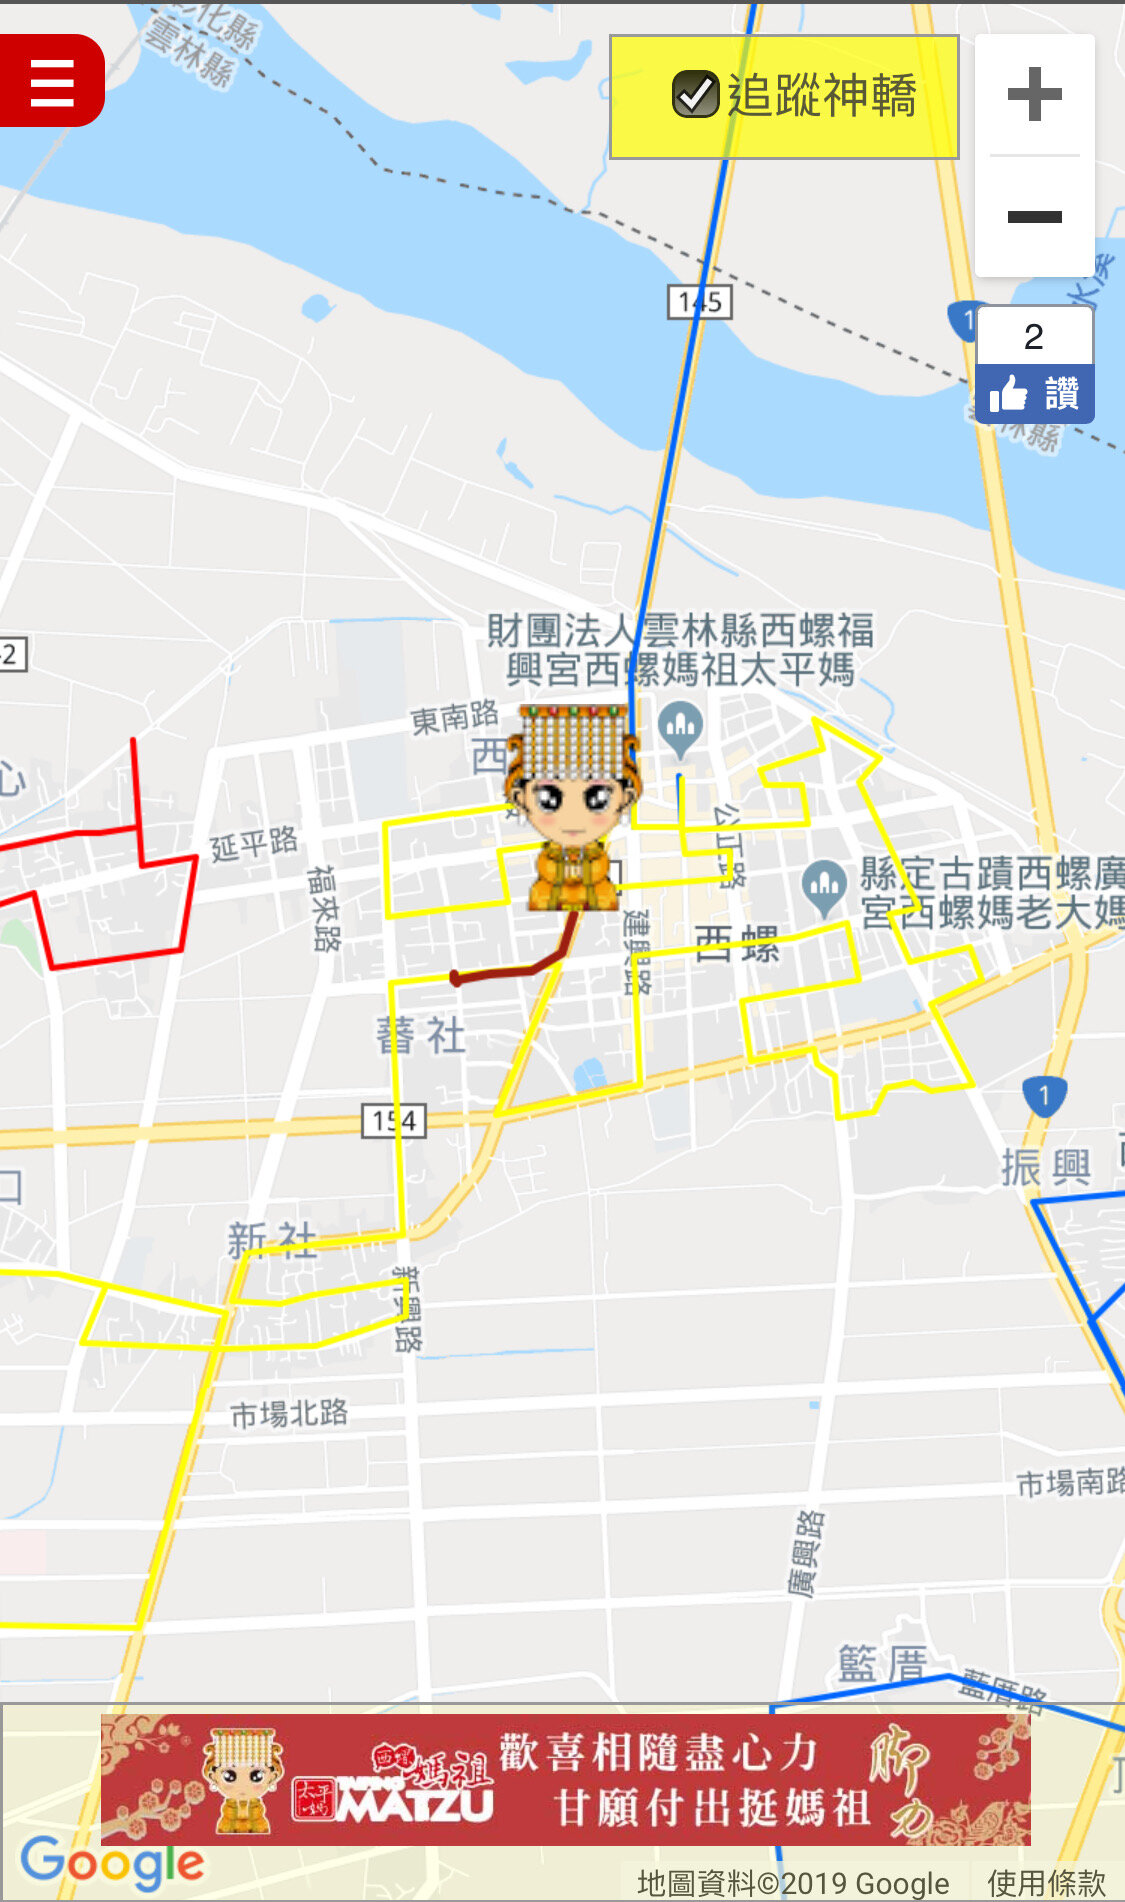 20191102西螺福興宮太平媽己亥年螺陽迎太平大會香神轎GPS即時定位系統服務 (5).JPG